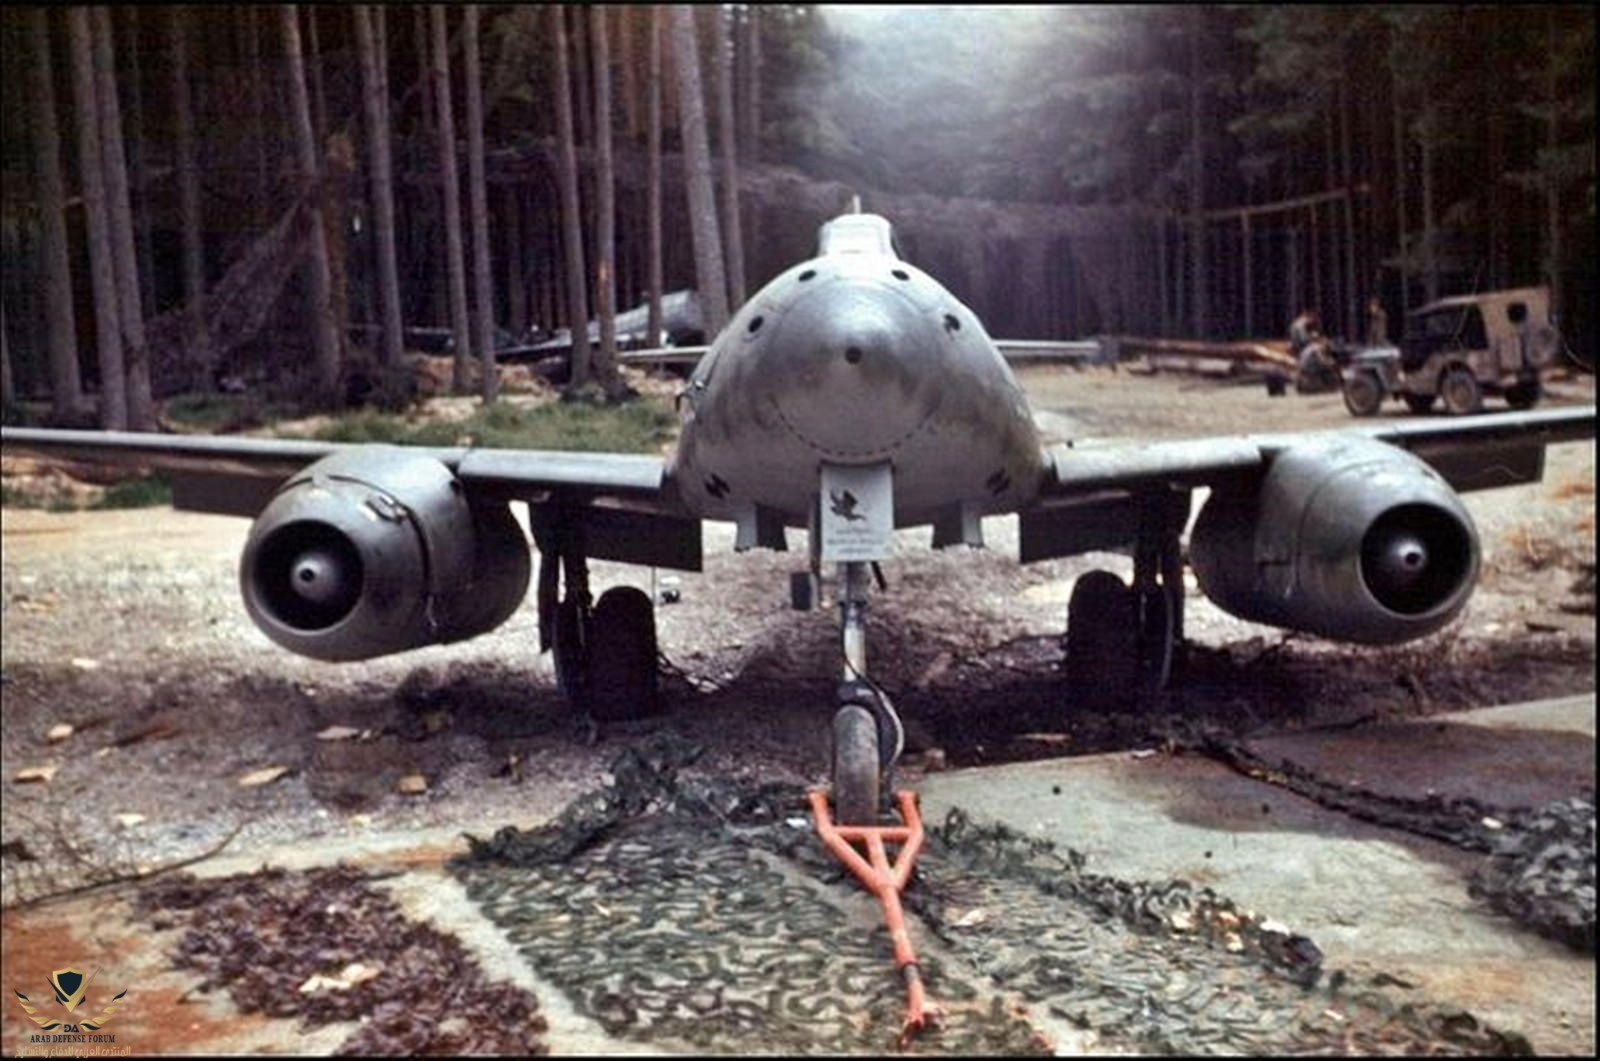 Messerschmitt Me 262 captured in woodlands.jpeg